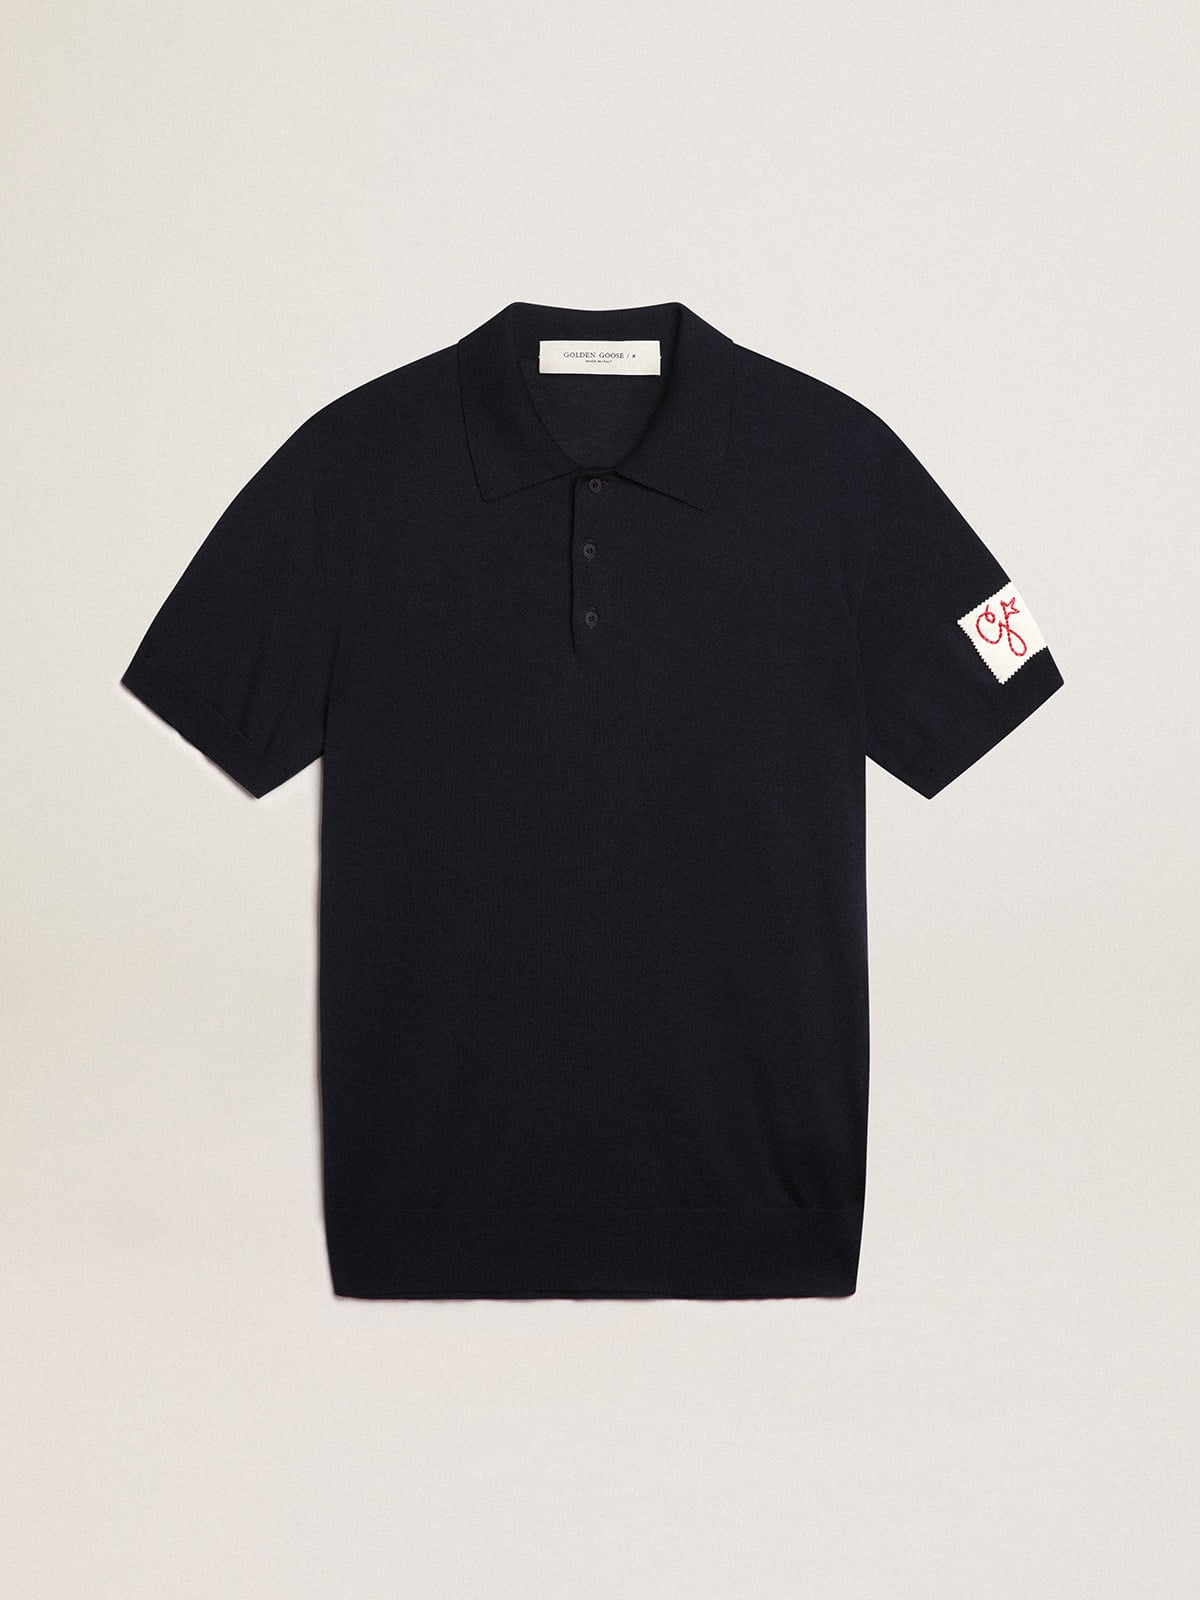 Men's short-sleeved polo shirt in navy-blue merino wool